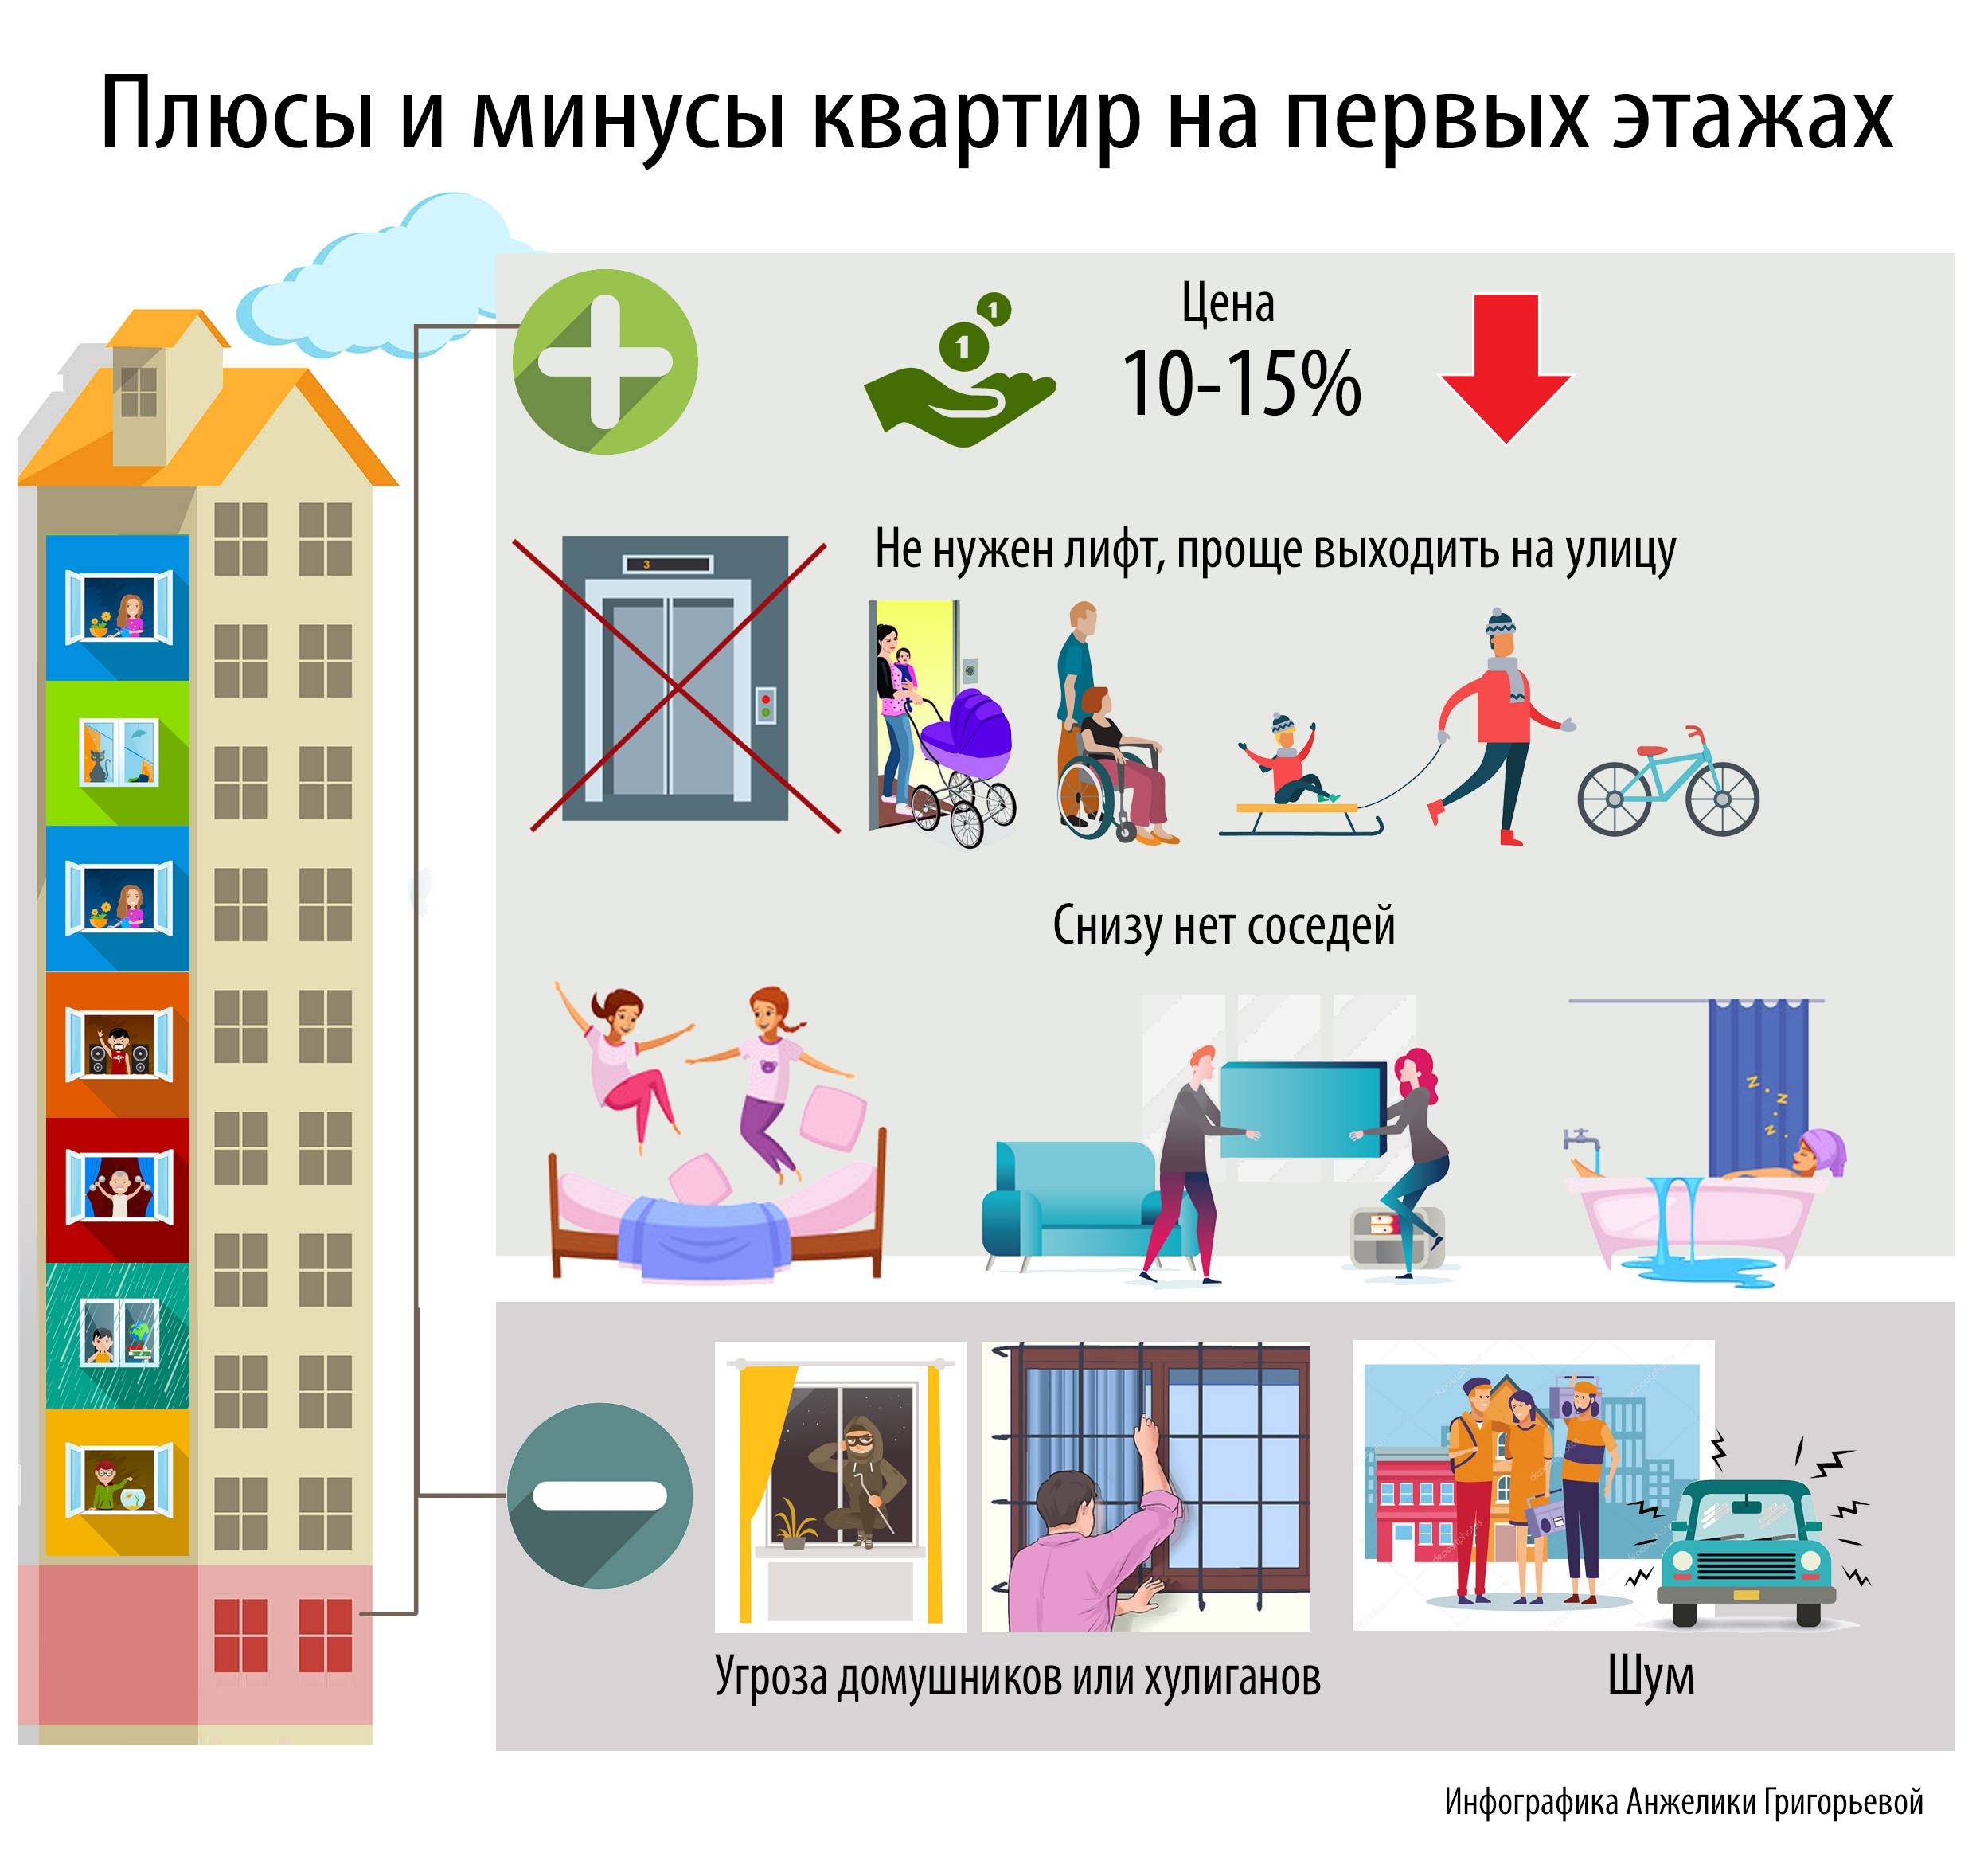 Где более комфортно и лучше жить - в доме или квартире? | domosite.ru